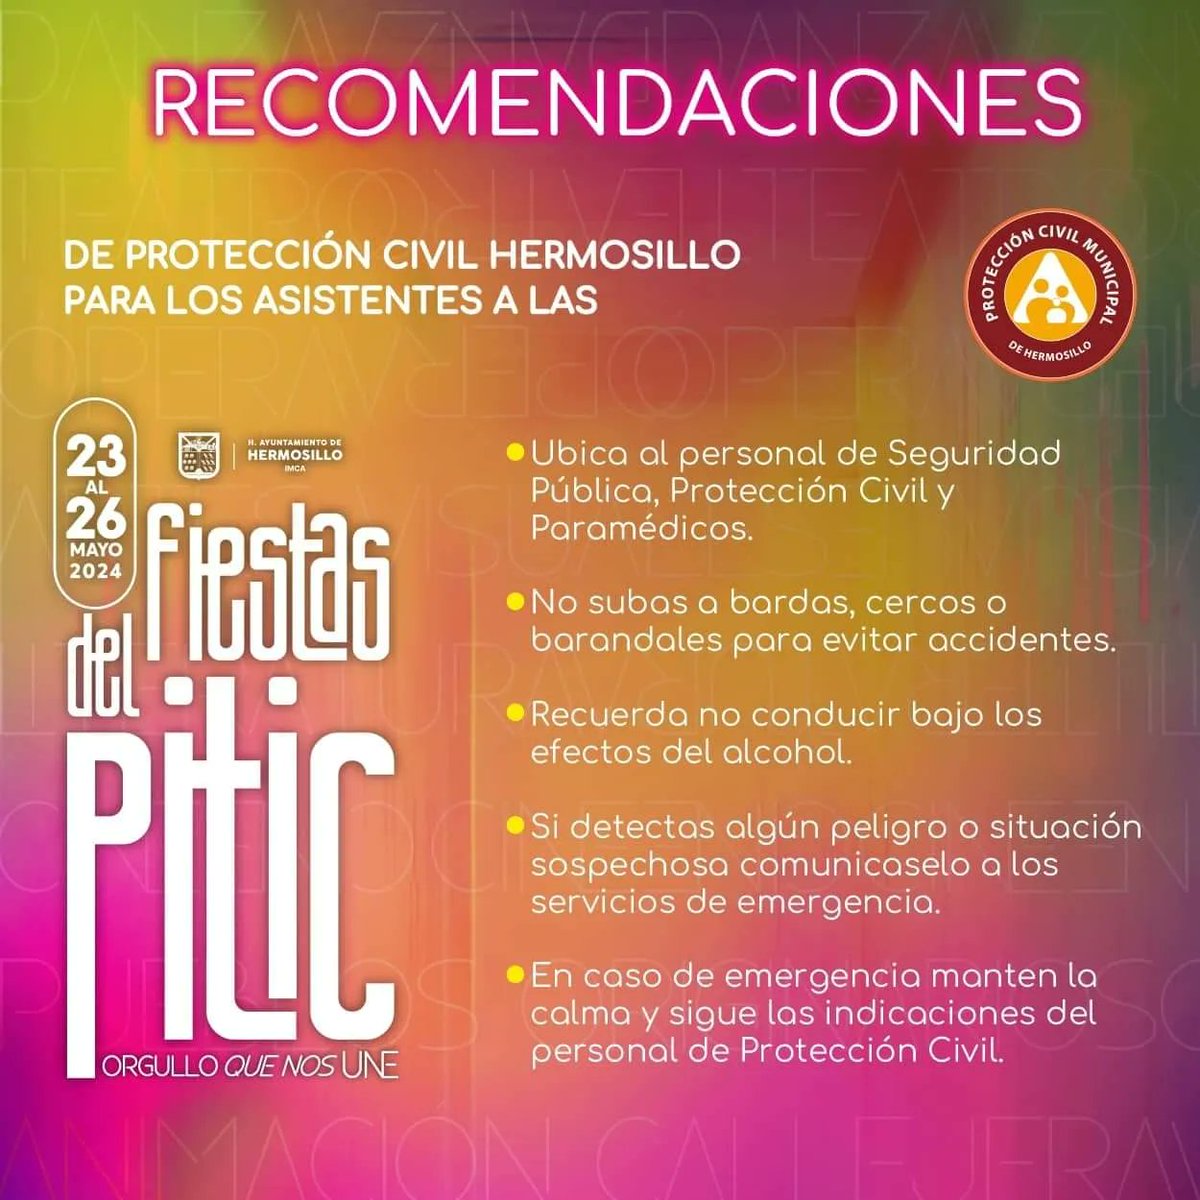 🎉😊 Estas son algunas recomendaciones de Protección Civil de Hermosillo para los asistentes a @lasfiestaspitic. ¡Tu seguridad es lo más importante!